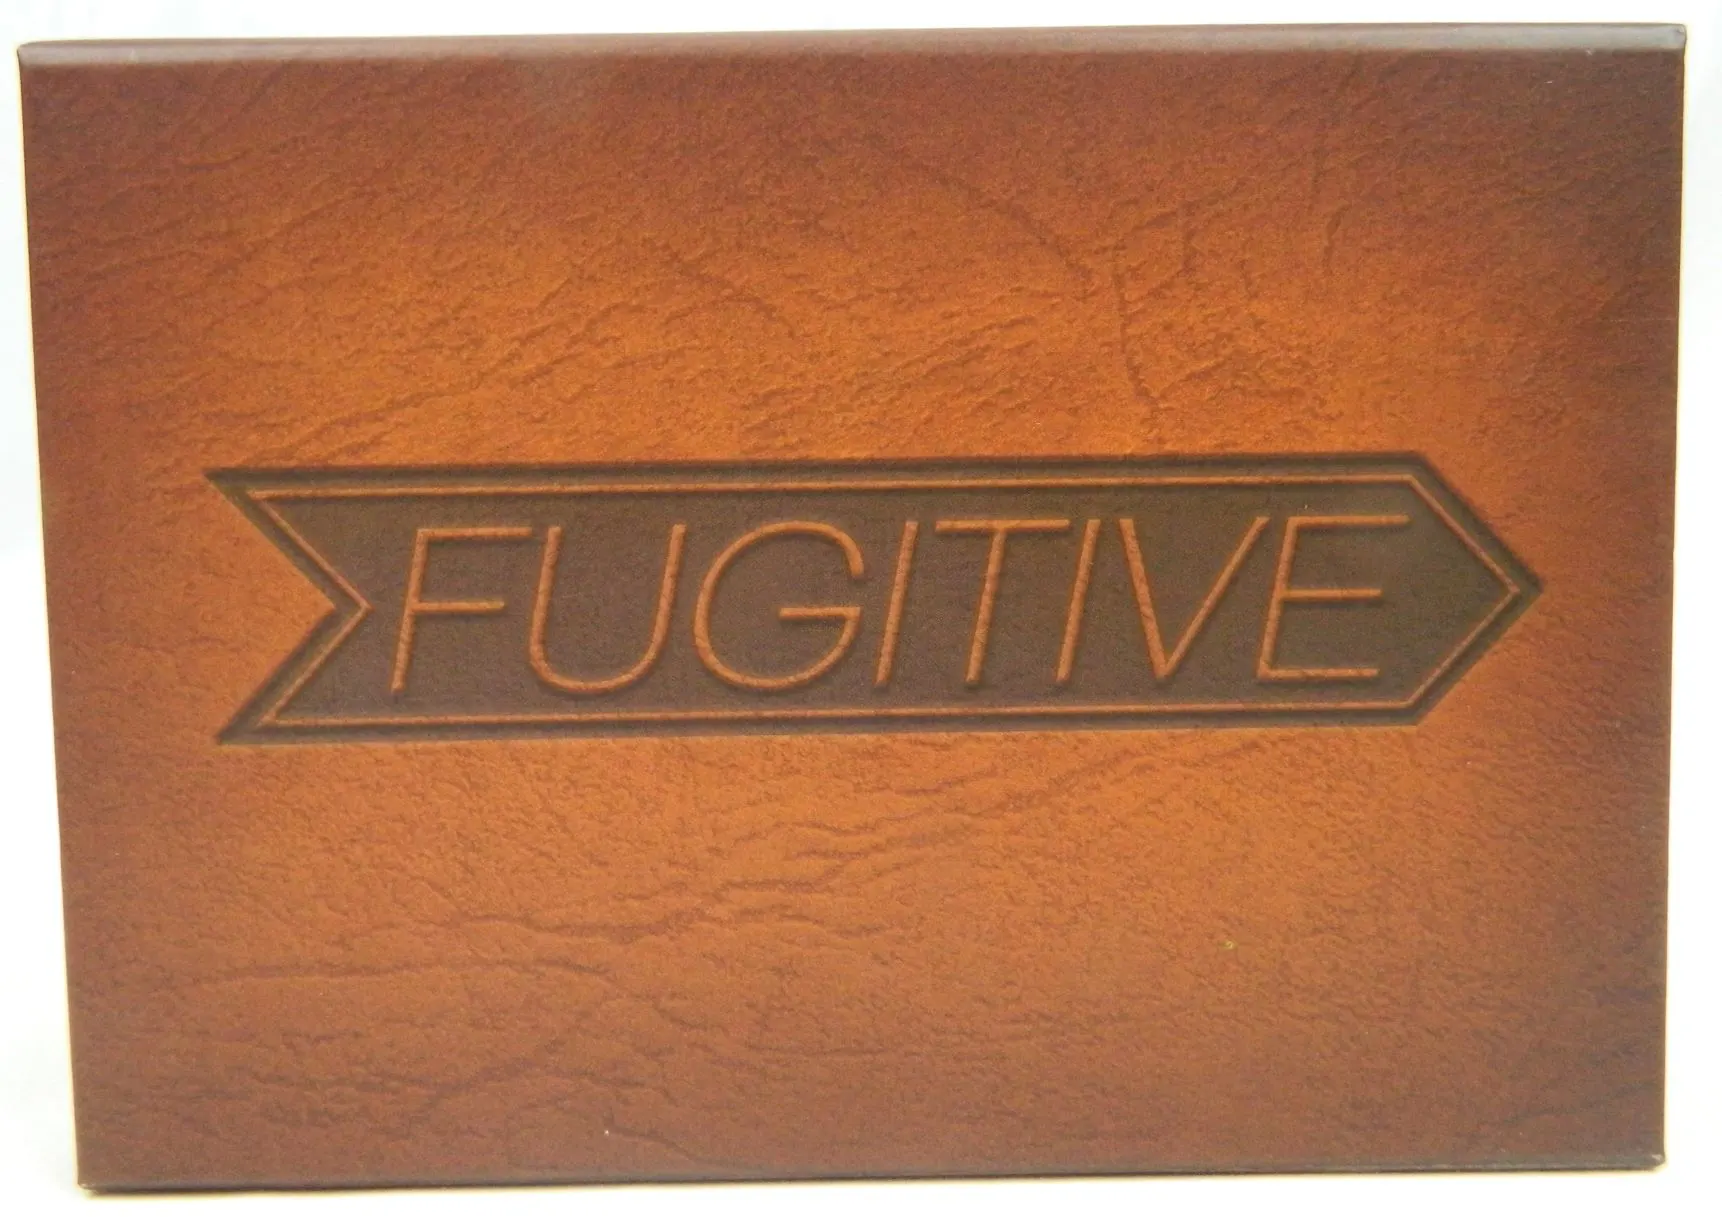 Box for Fugitive